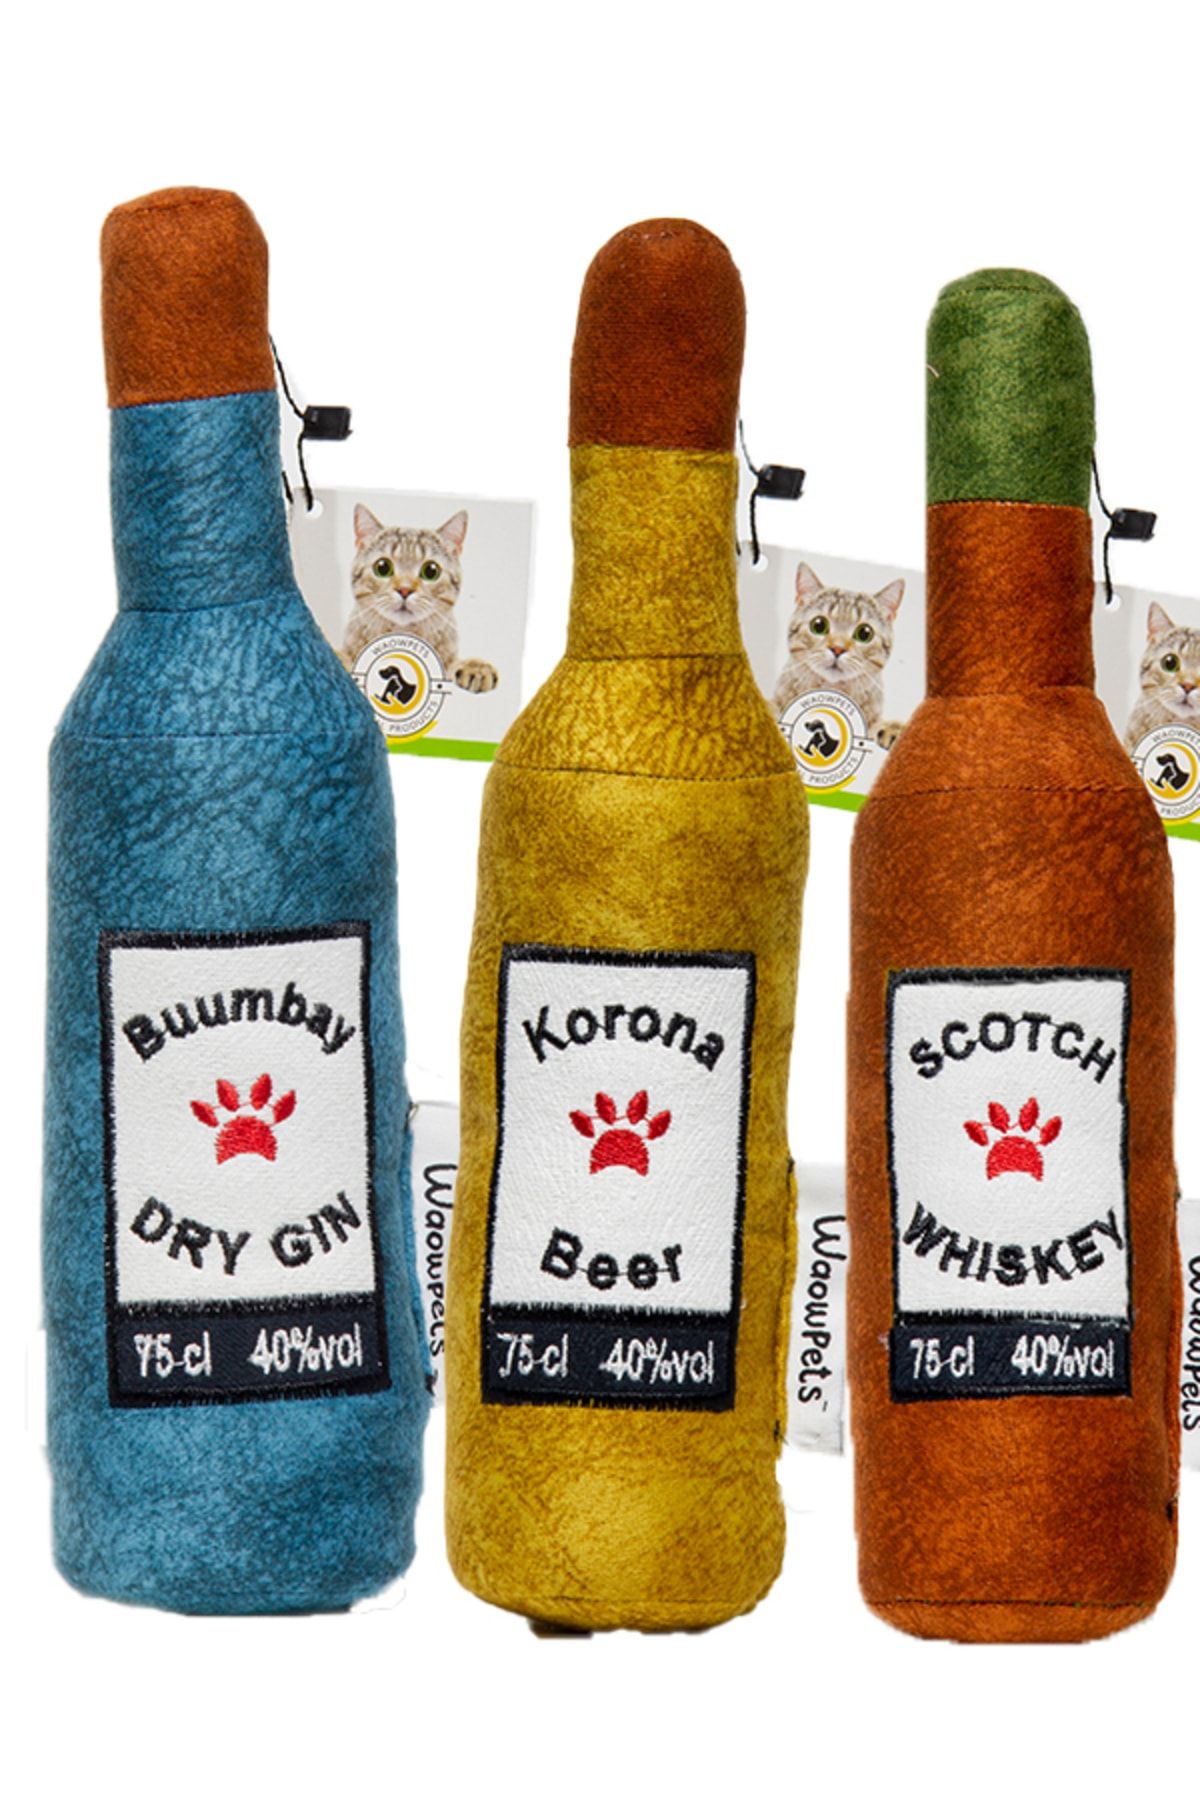 WaowPets Animal Products Bottle Toy, Köpek Oyuncağı, Kedi Oyuncağı, Peluş Oyuncak, 3'lü Set (Turkuaz - Sarı - Kahverengi)